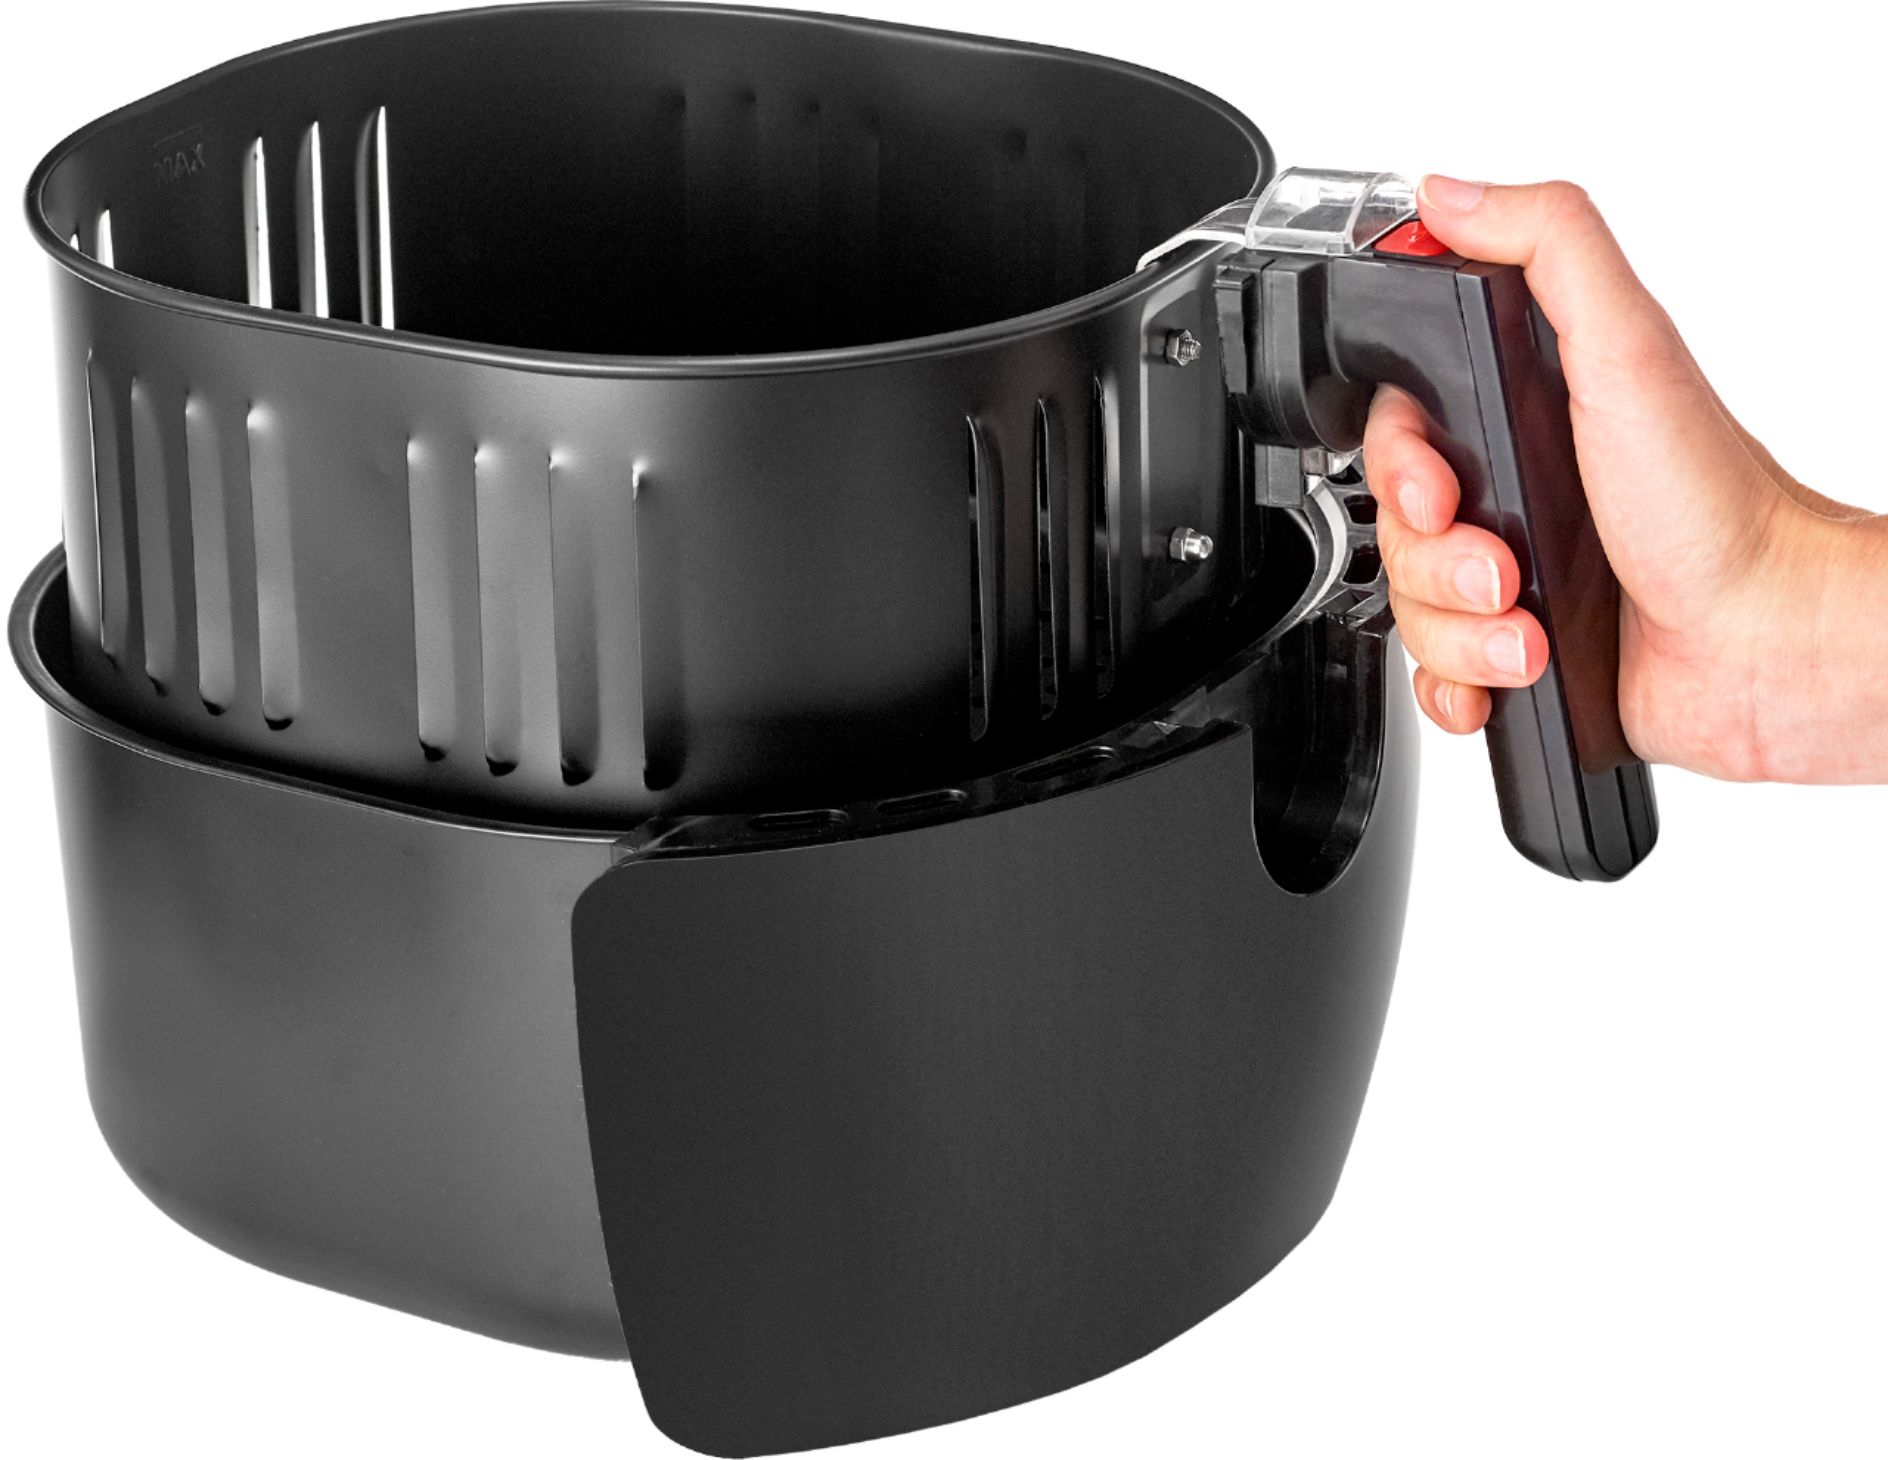 Vebreda Air Fryer 4.5 Quart with Dishwasher Safe Basket, 1200W, Black 